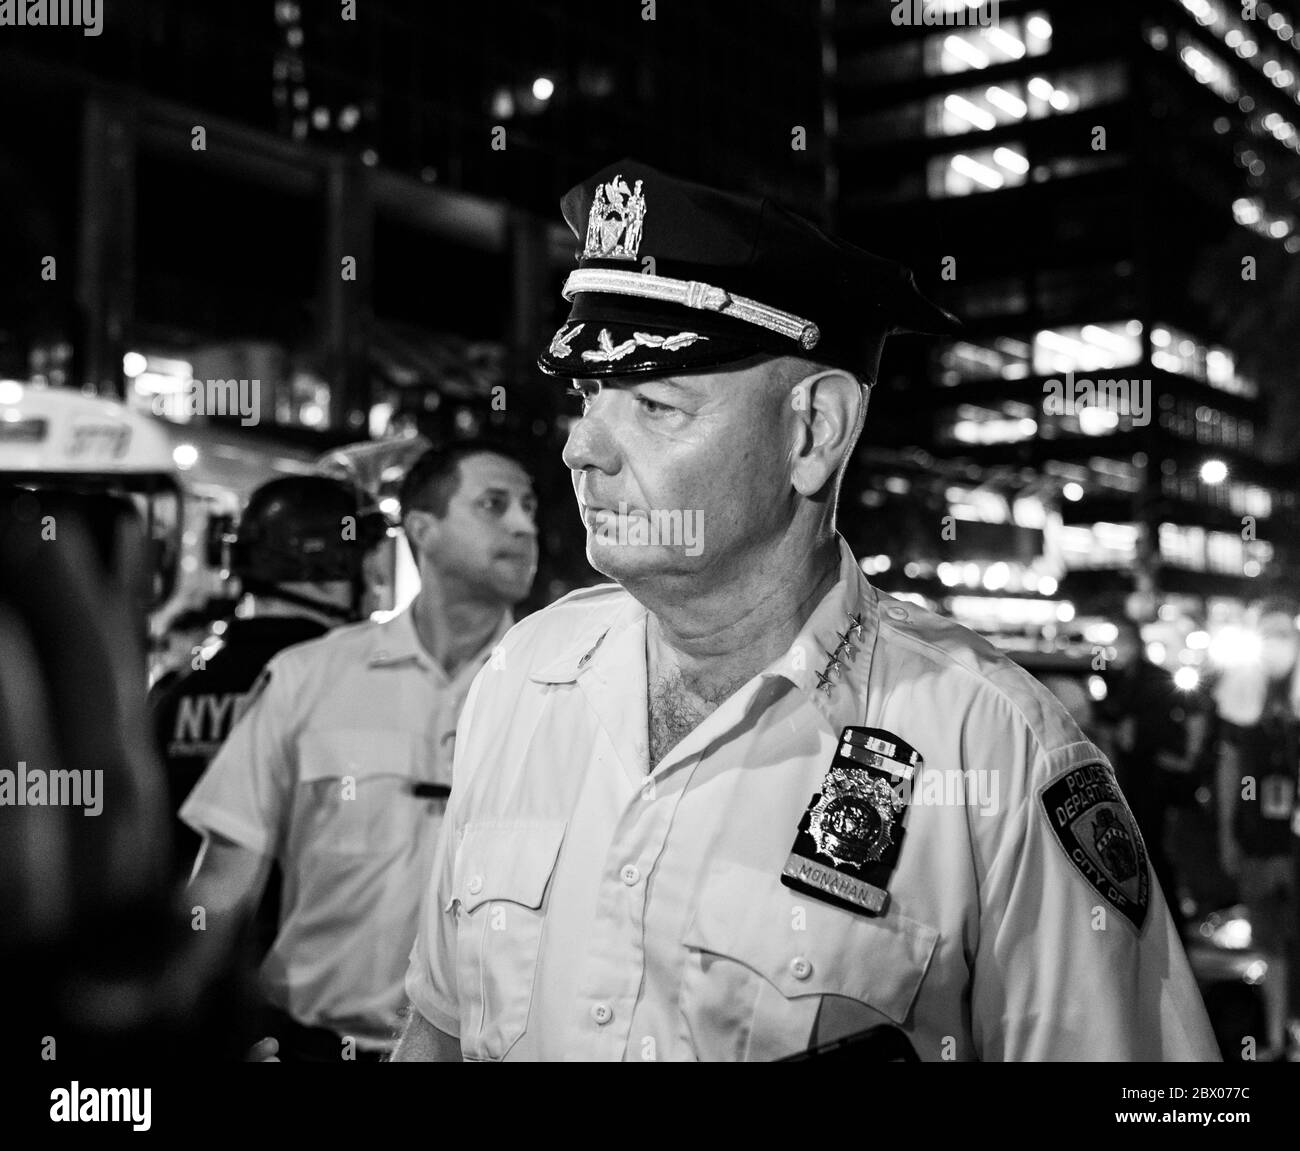 New York, NY - 3 juin 2020 : Terence Monahan s'exprime à la pression lors de l'arrestation après une violation du couvre-feu lors de la pandémie COVID-19 et une protestation contre le meurtre de George Floyd à Manhattan Banque D'Images